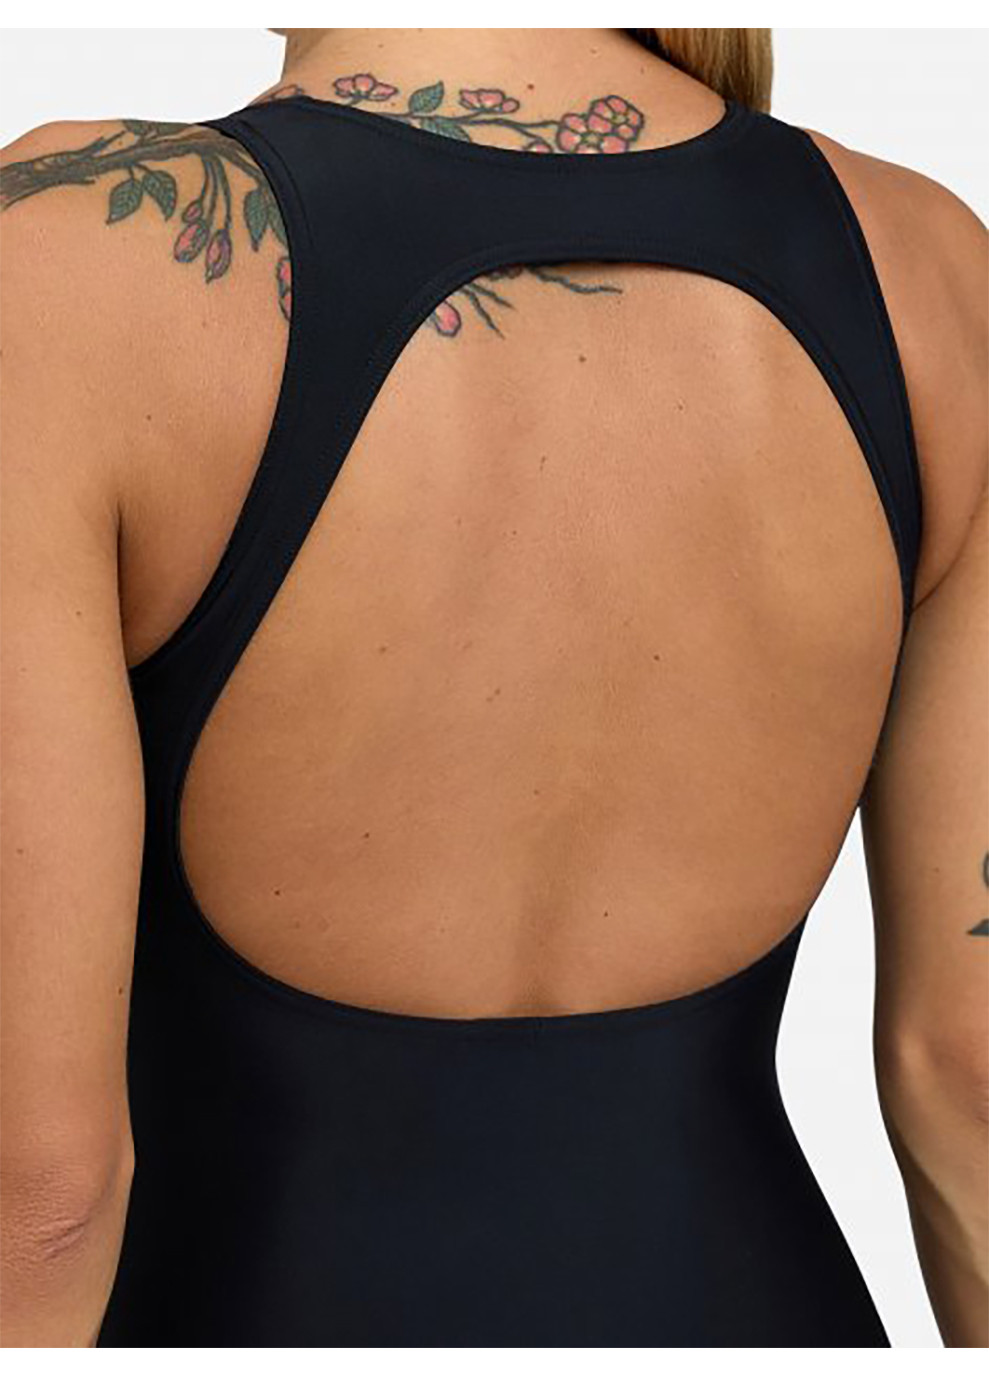 Чорний демісезонний купальник жіночий закритий solid o back swimsuit чорний Arena